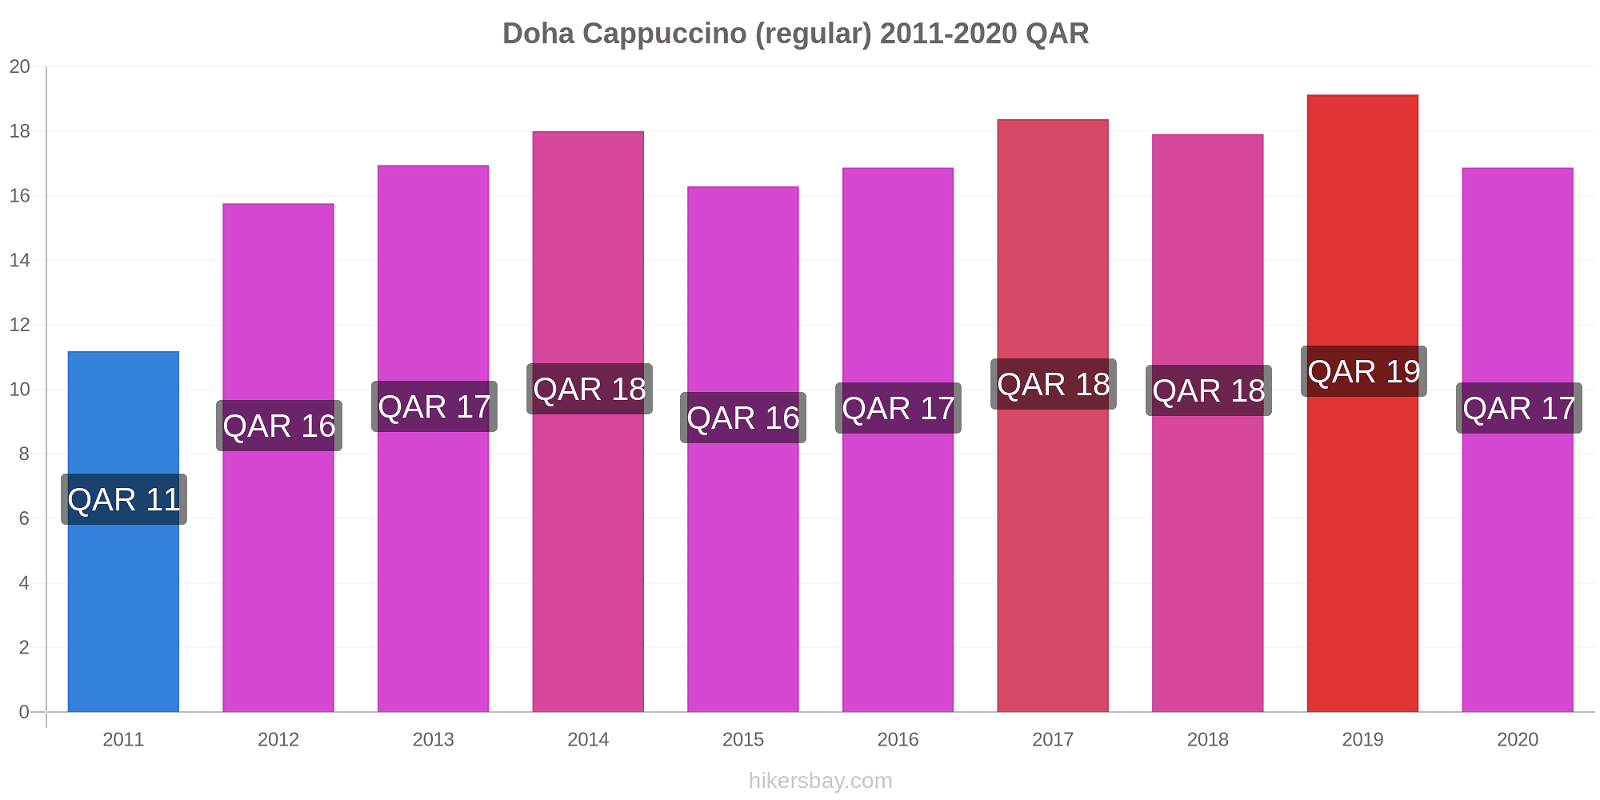 Doha variação de preço Capuccino (regular) hikersbay.com